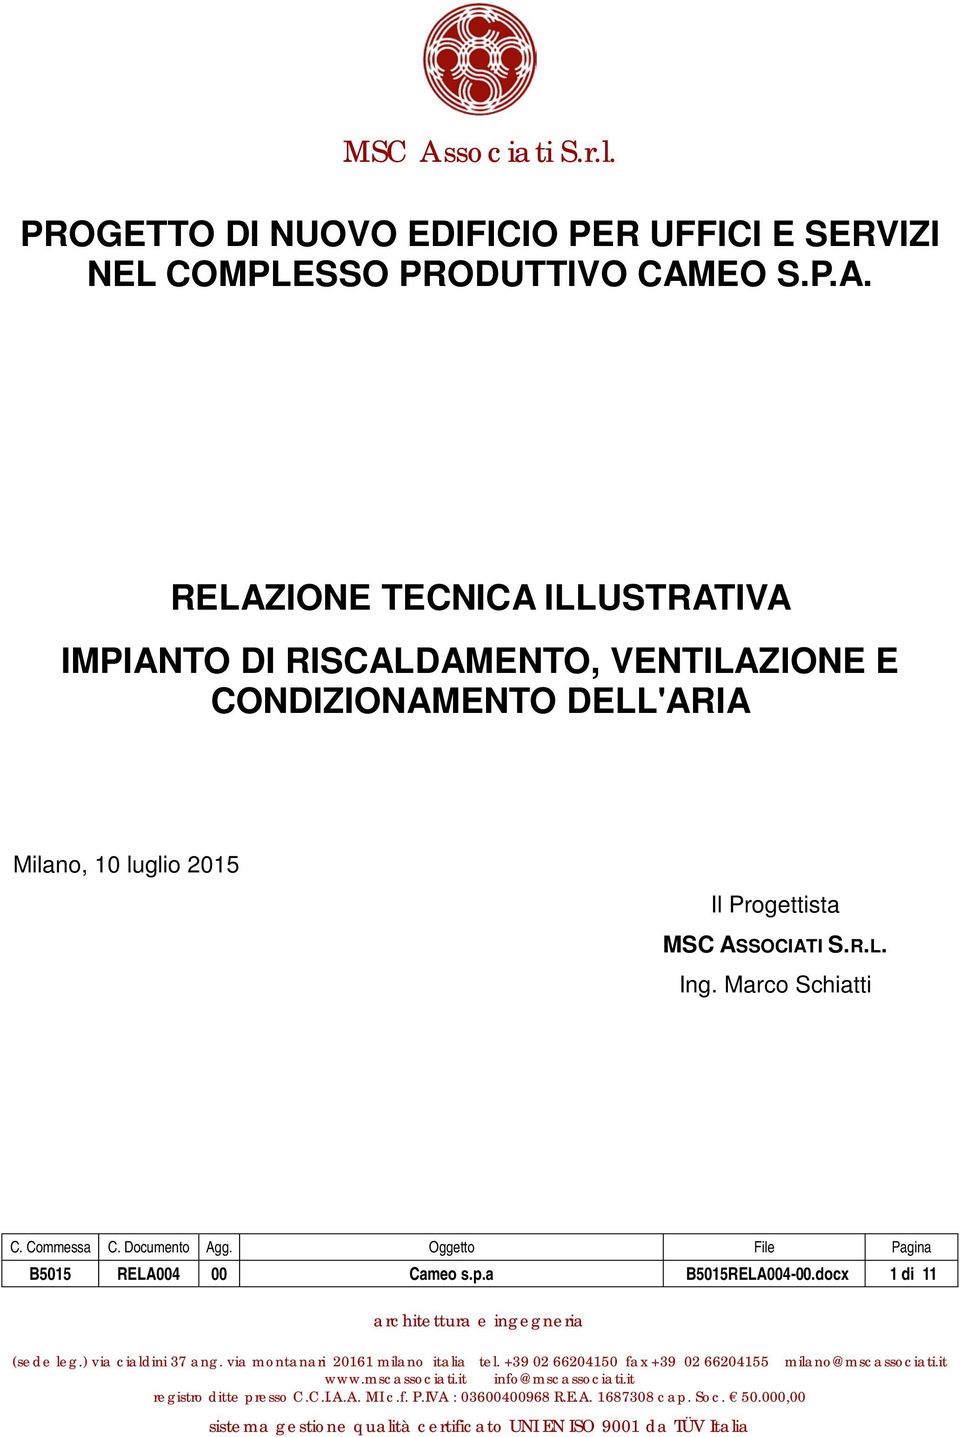 Marco Schiatti B5015 RELA004 00 Cameo s.p.a B5015RELA004-00.docx 1 di 11 architettura e ingegneria (sede leg.) via cialdini 37 ang. via montanari 20161 milano italia tel.